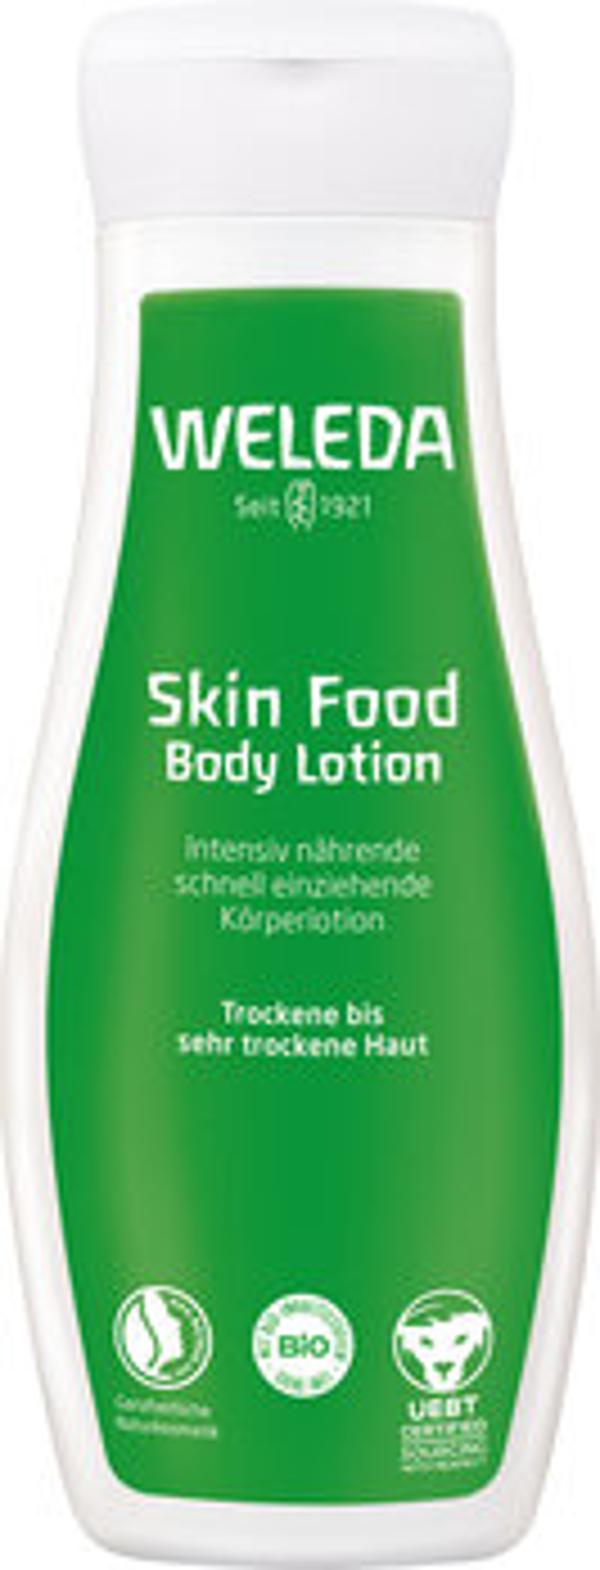 Produktfoto zu WELEDA Skin Food Body Lotion,